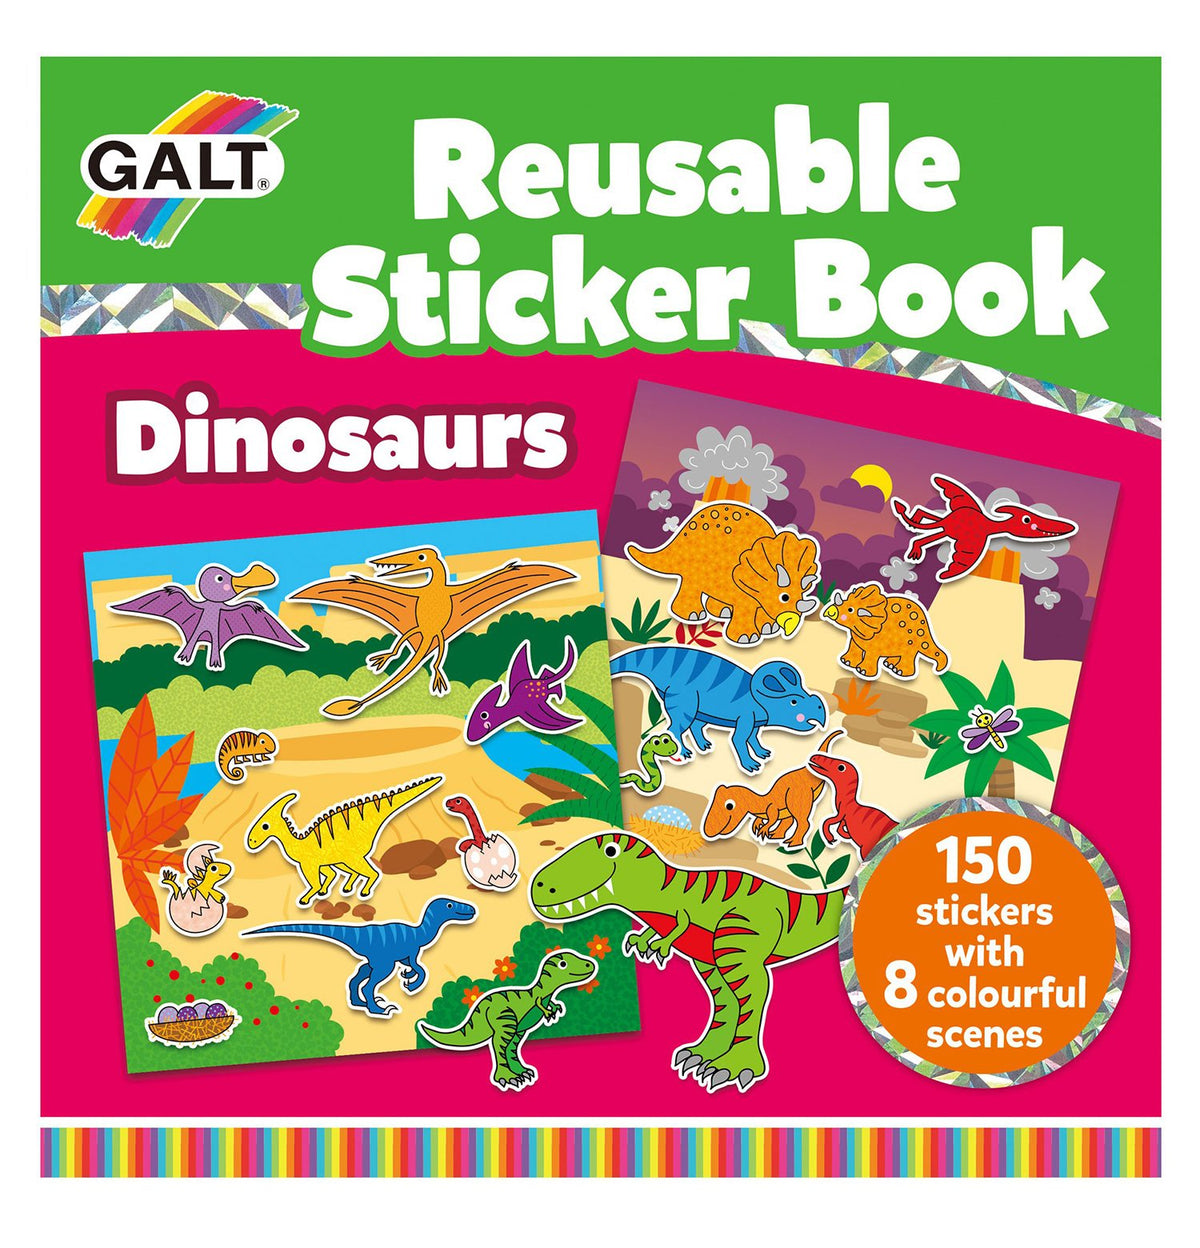 Reusable Sticker Books - Galt